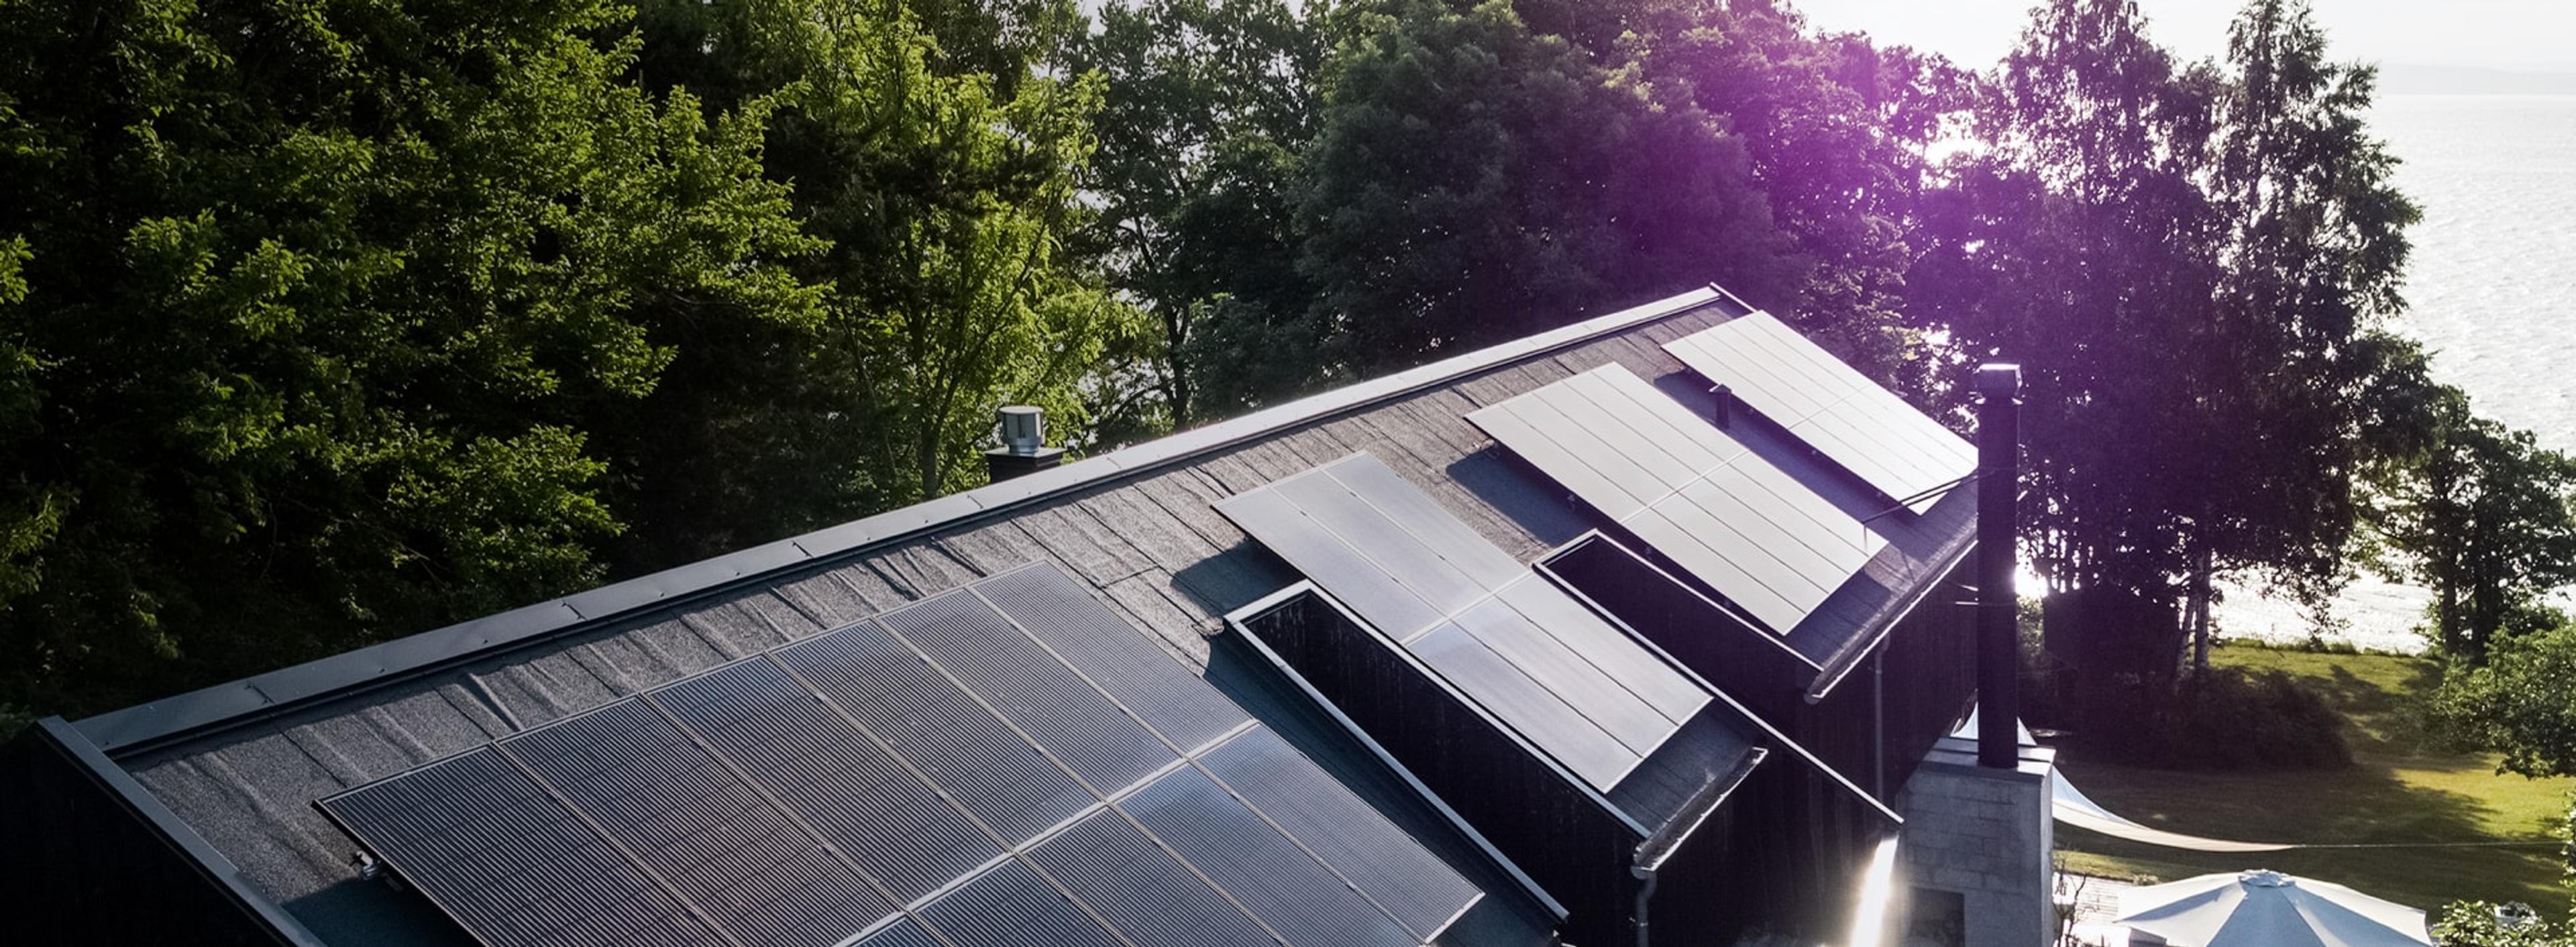 solcellepaneler på tak